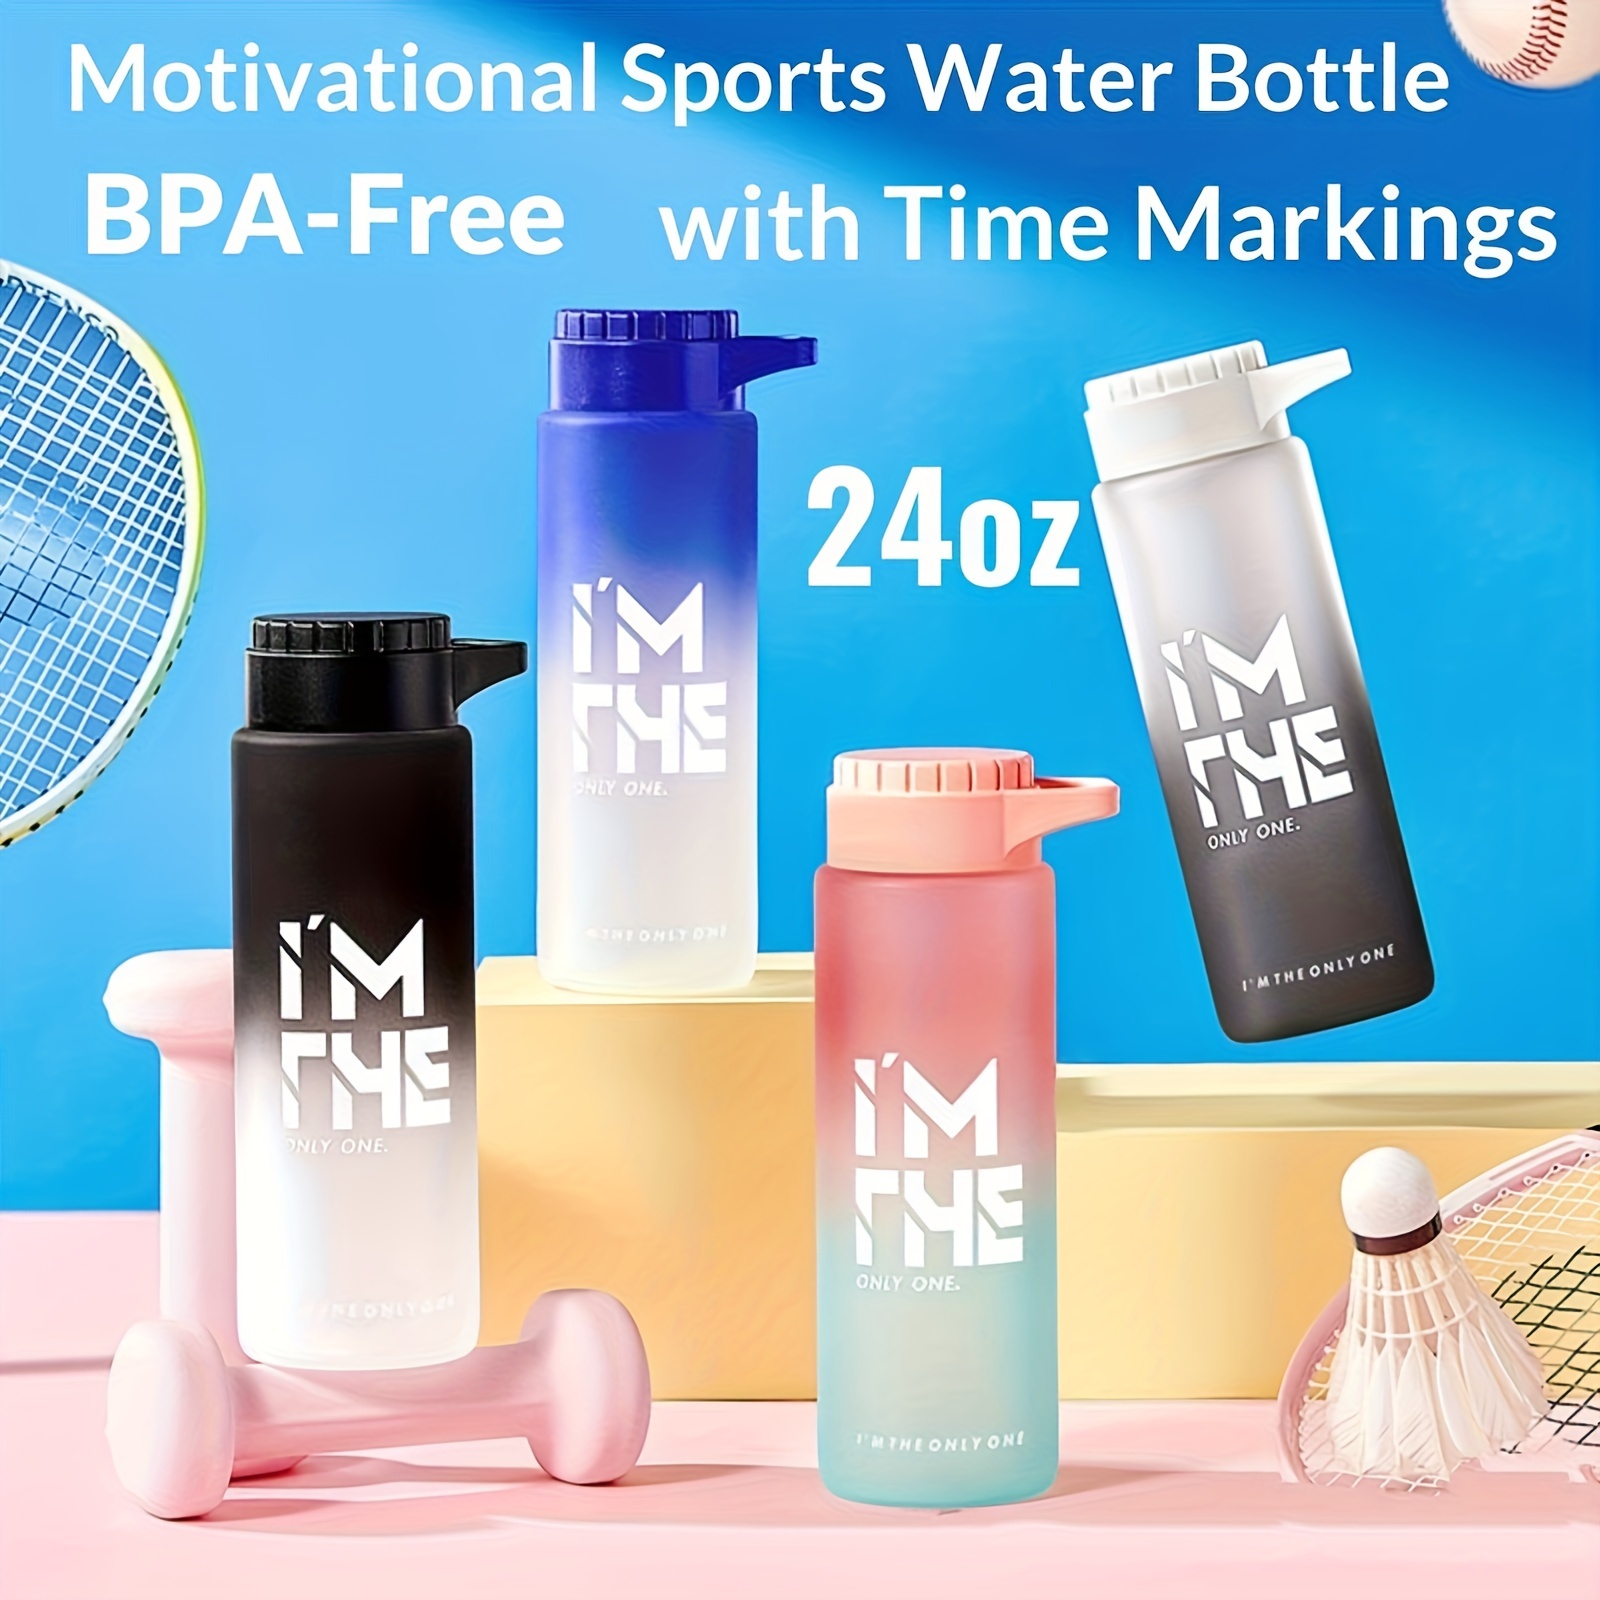 Tritan Water Bottle, Bpa Free & Leak Proof Water Bottle For Baby Children  Kids Adults - Temu